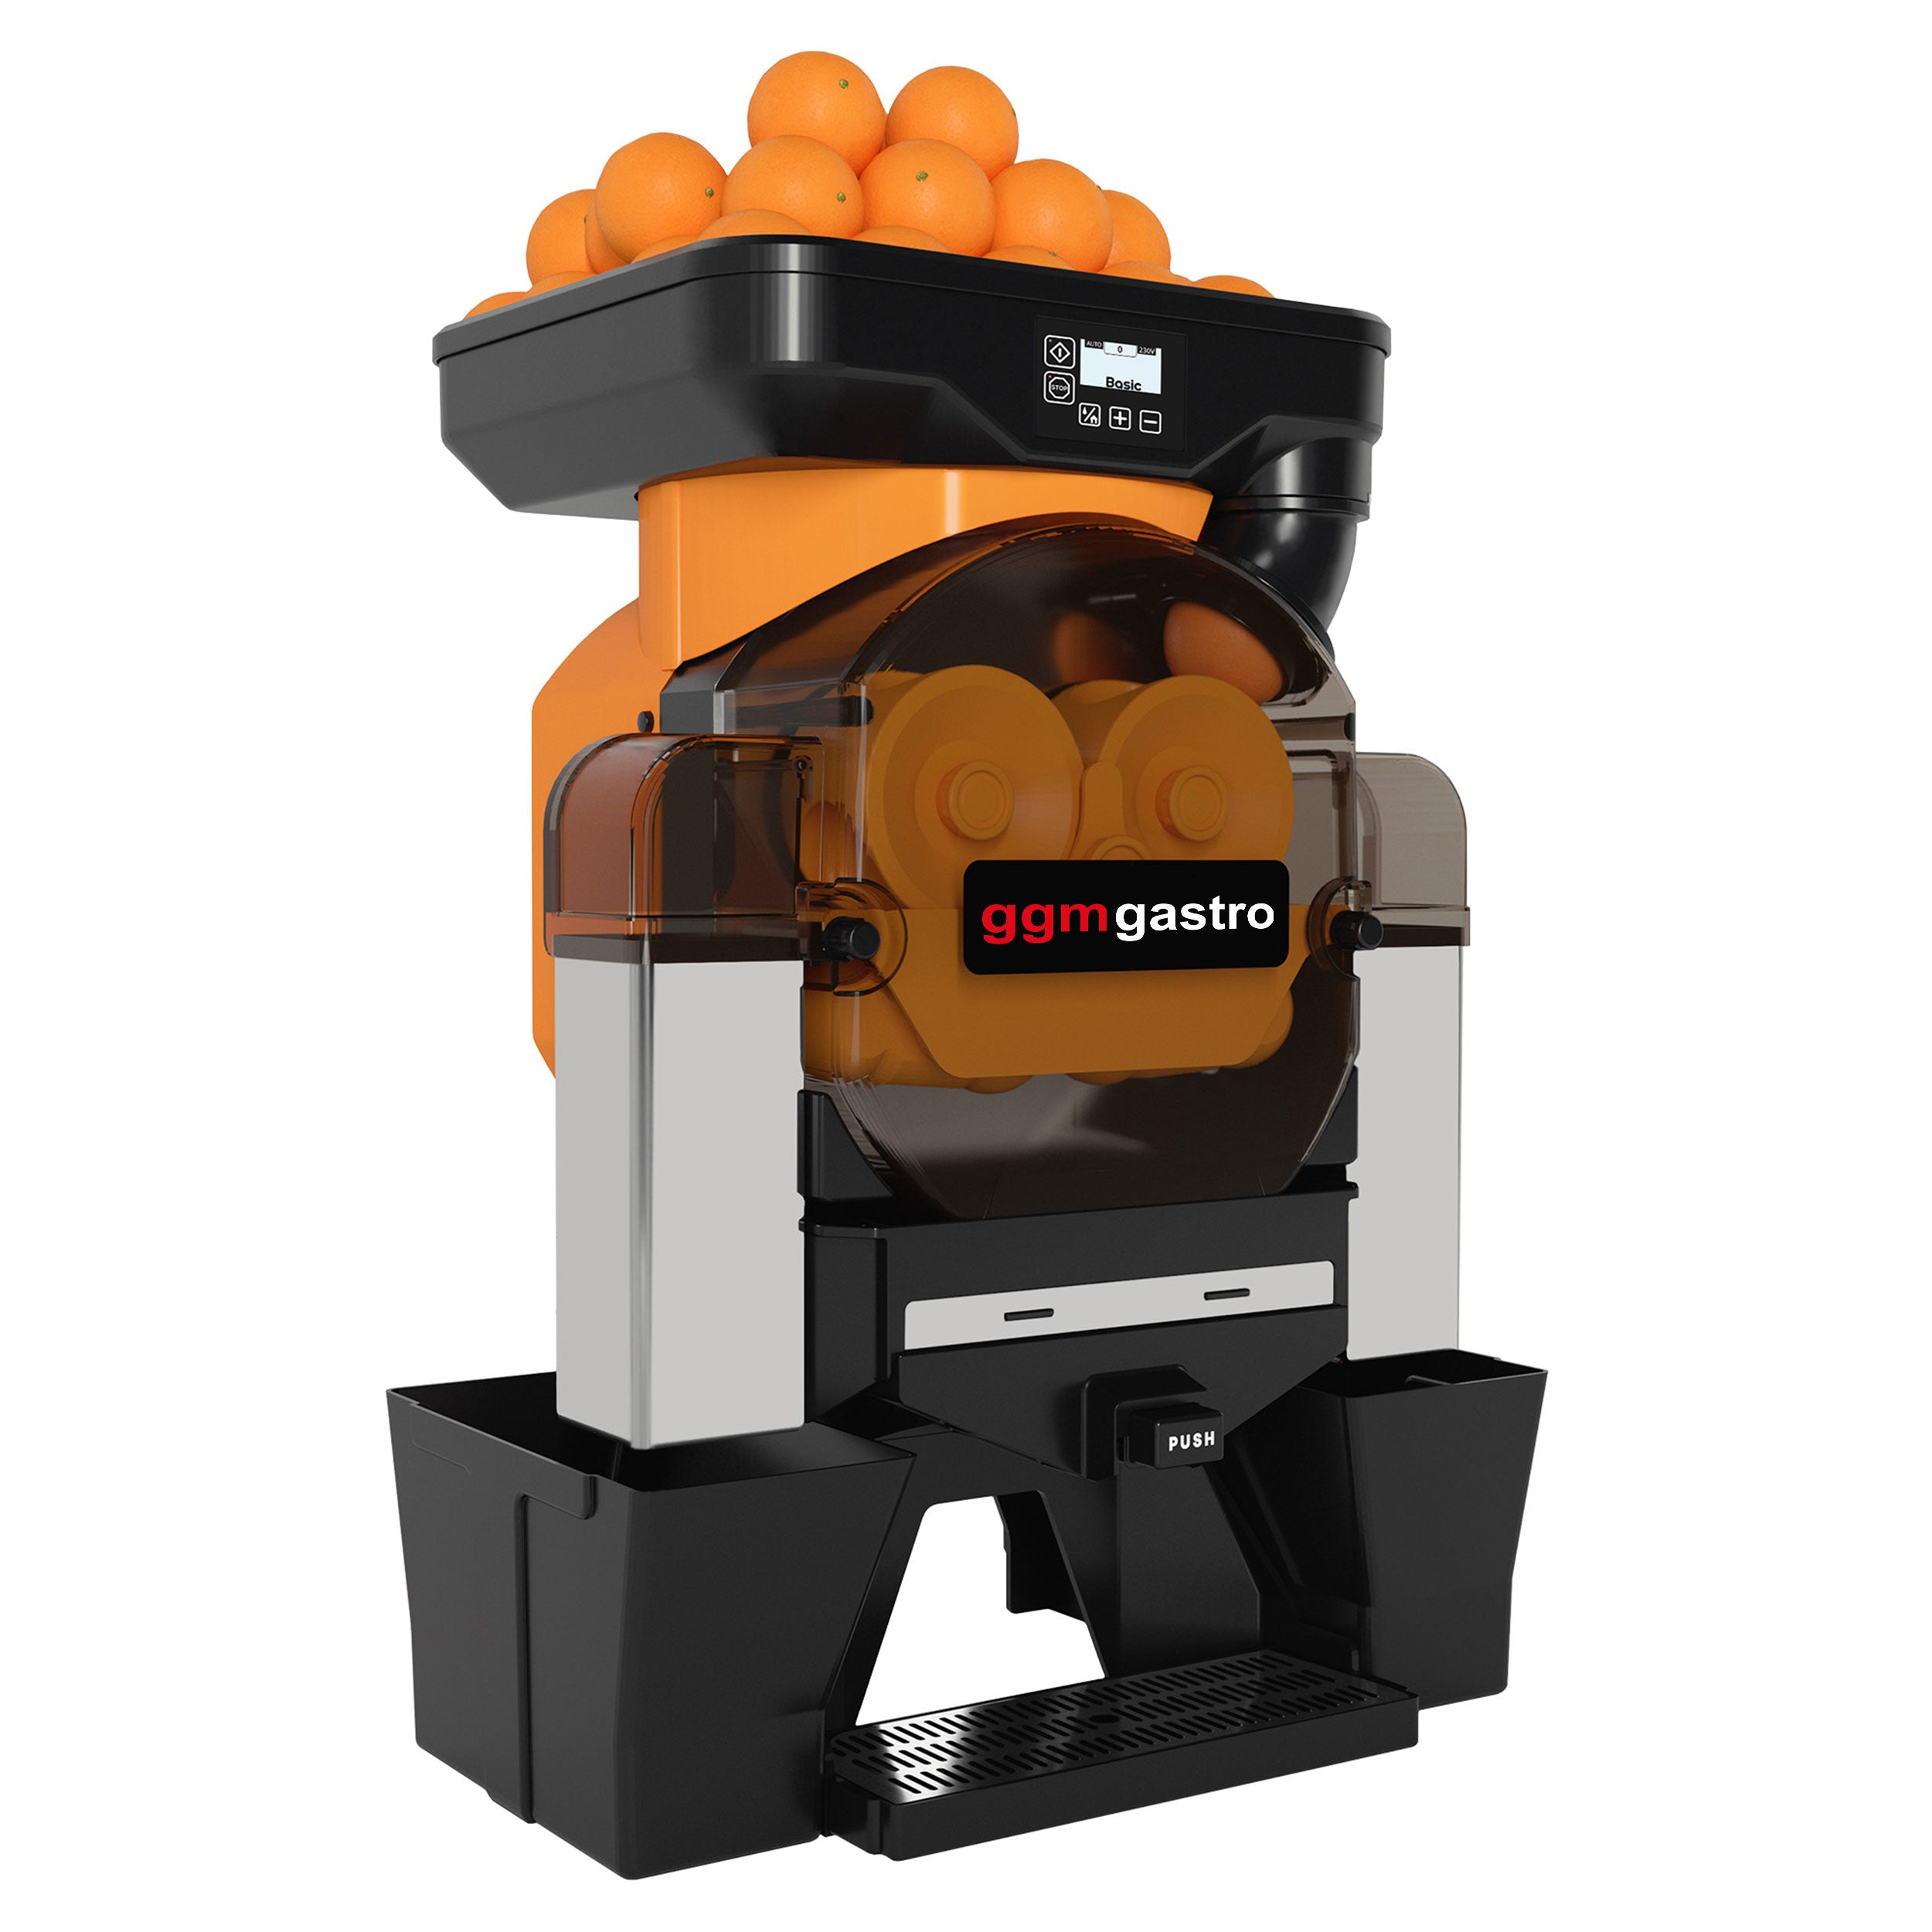 Elektrisk appelsinpresser - orange - Manuel fremføring - inklusive automatisk rengøringstilstand